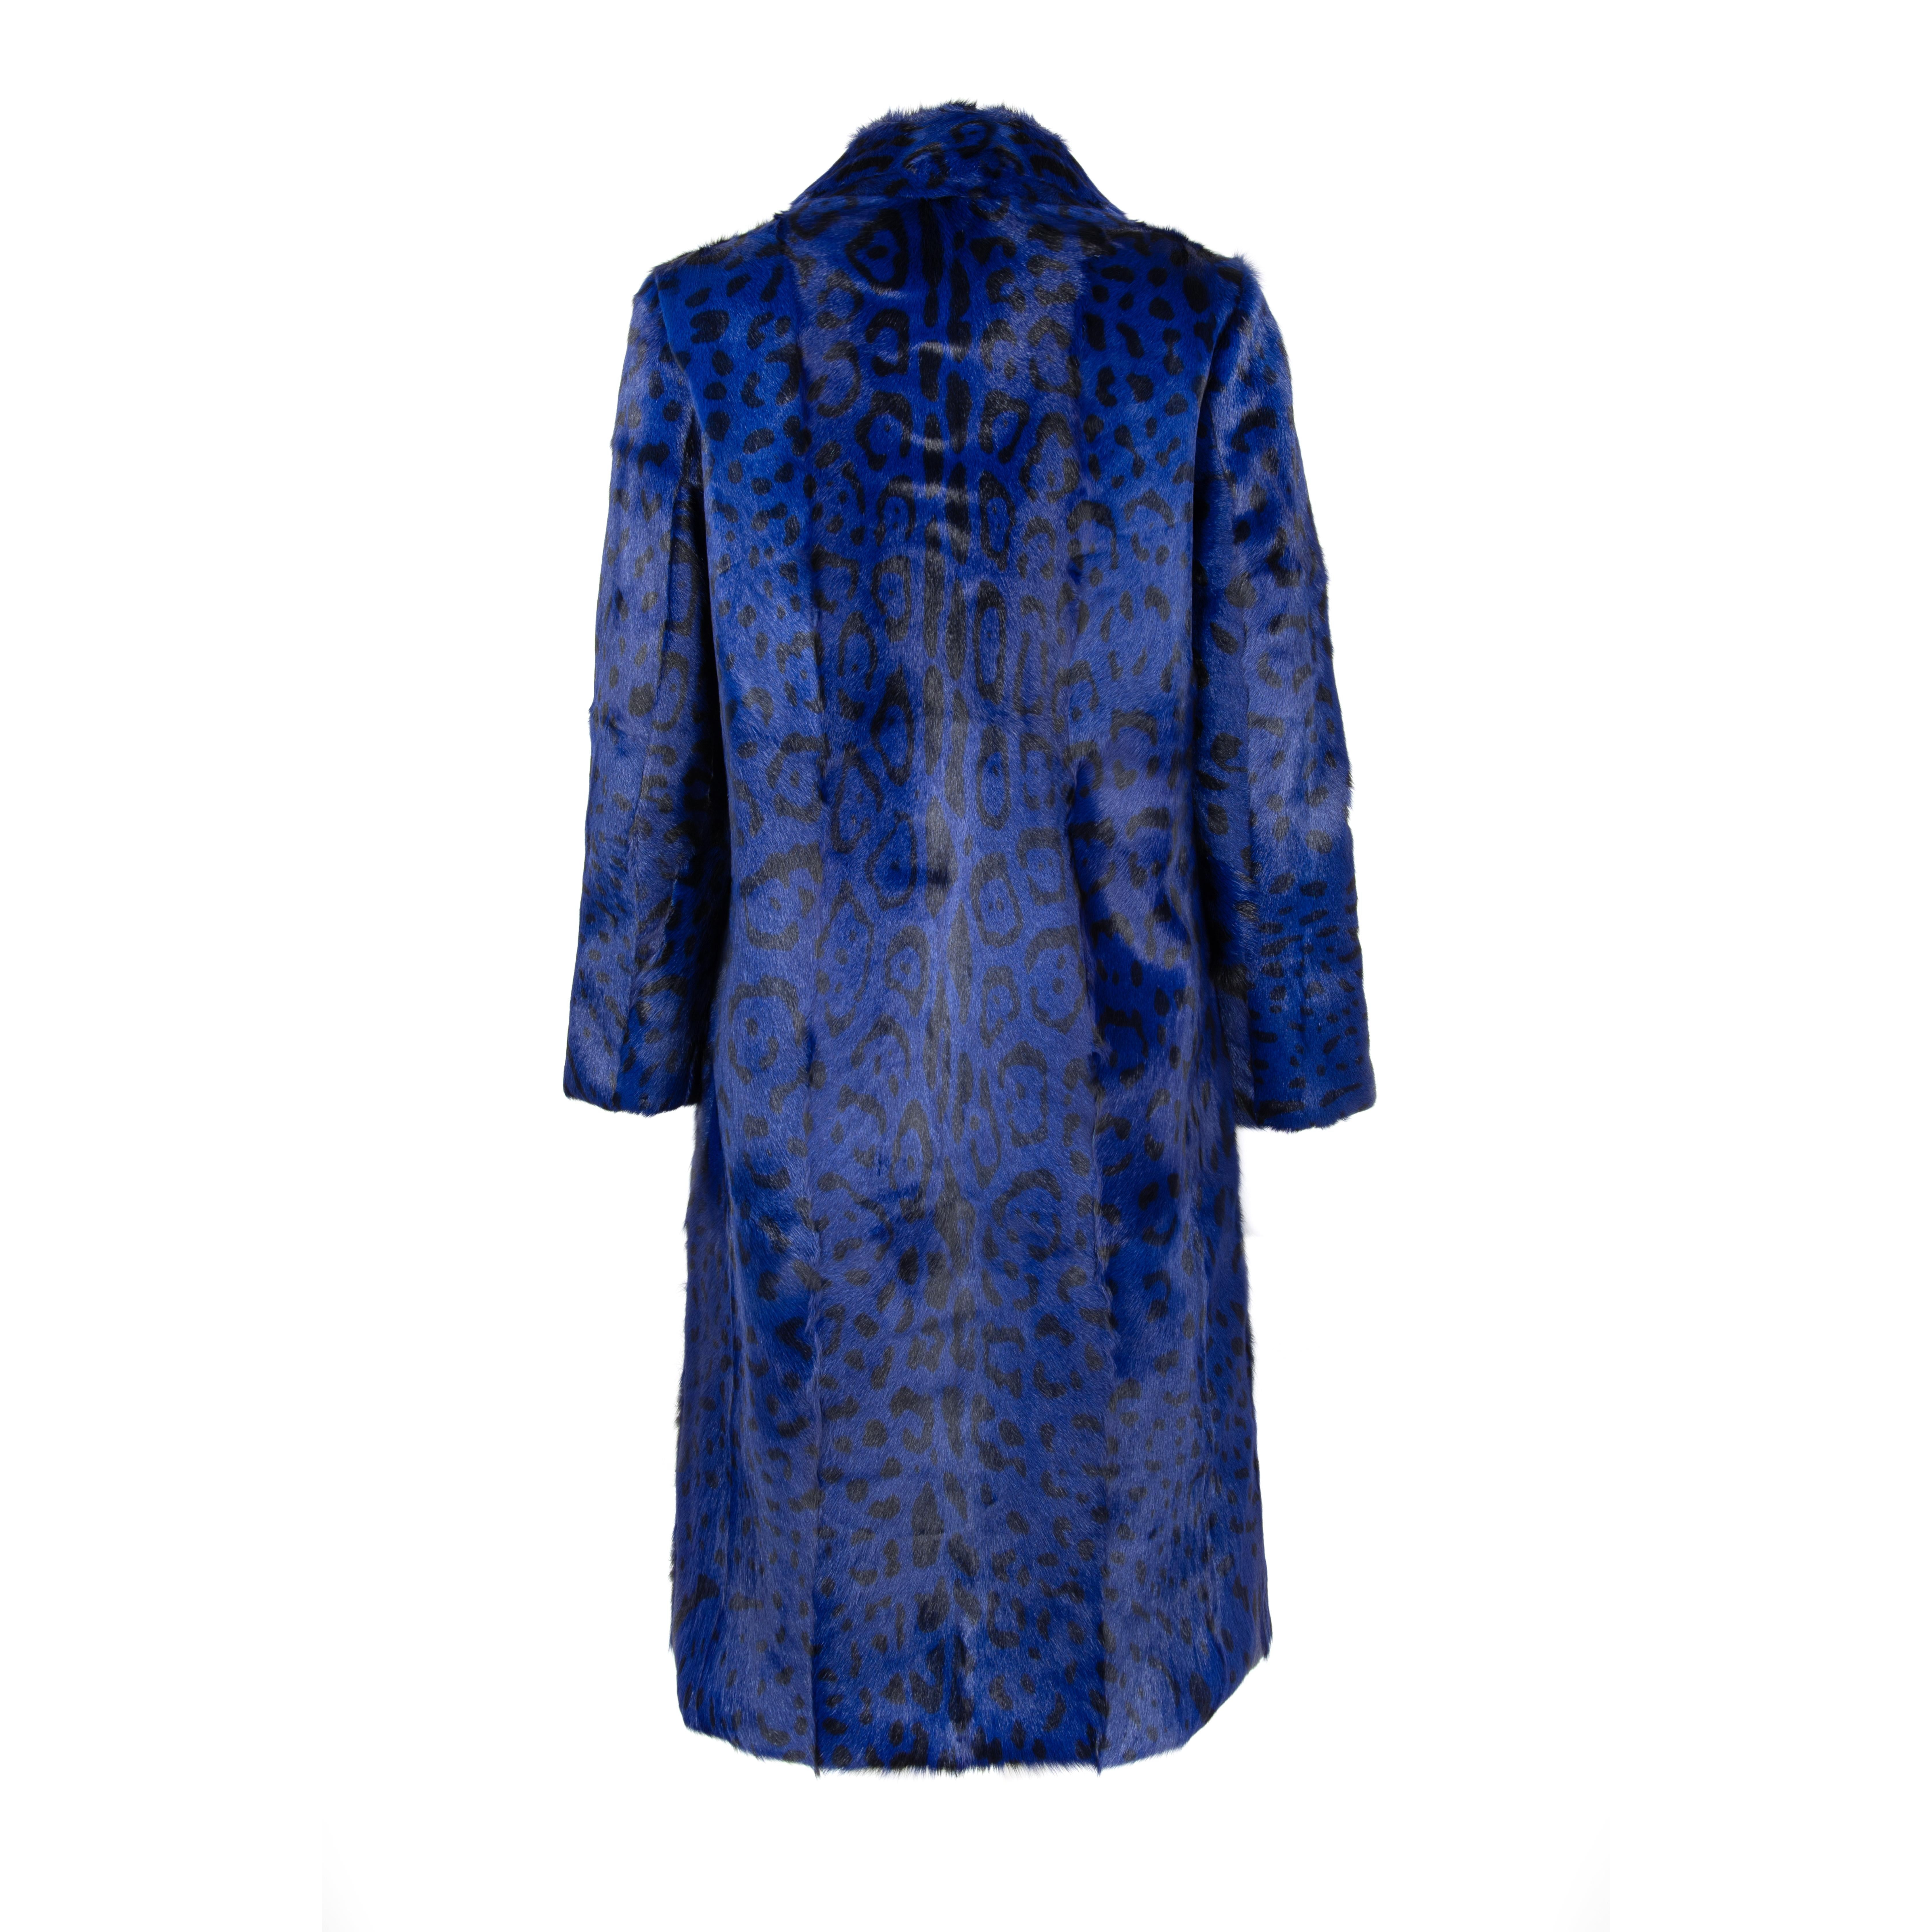 Women's Verheyen London Ink Blue Leopard Print Coat in Goat Hair Fur UK 8 - Brand New  For Sale